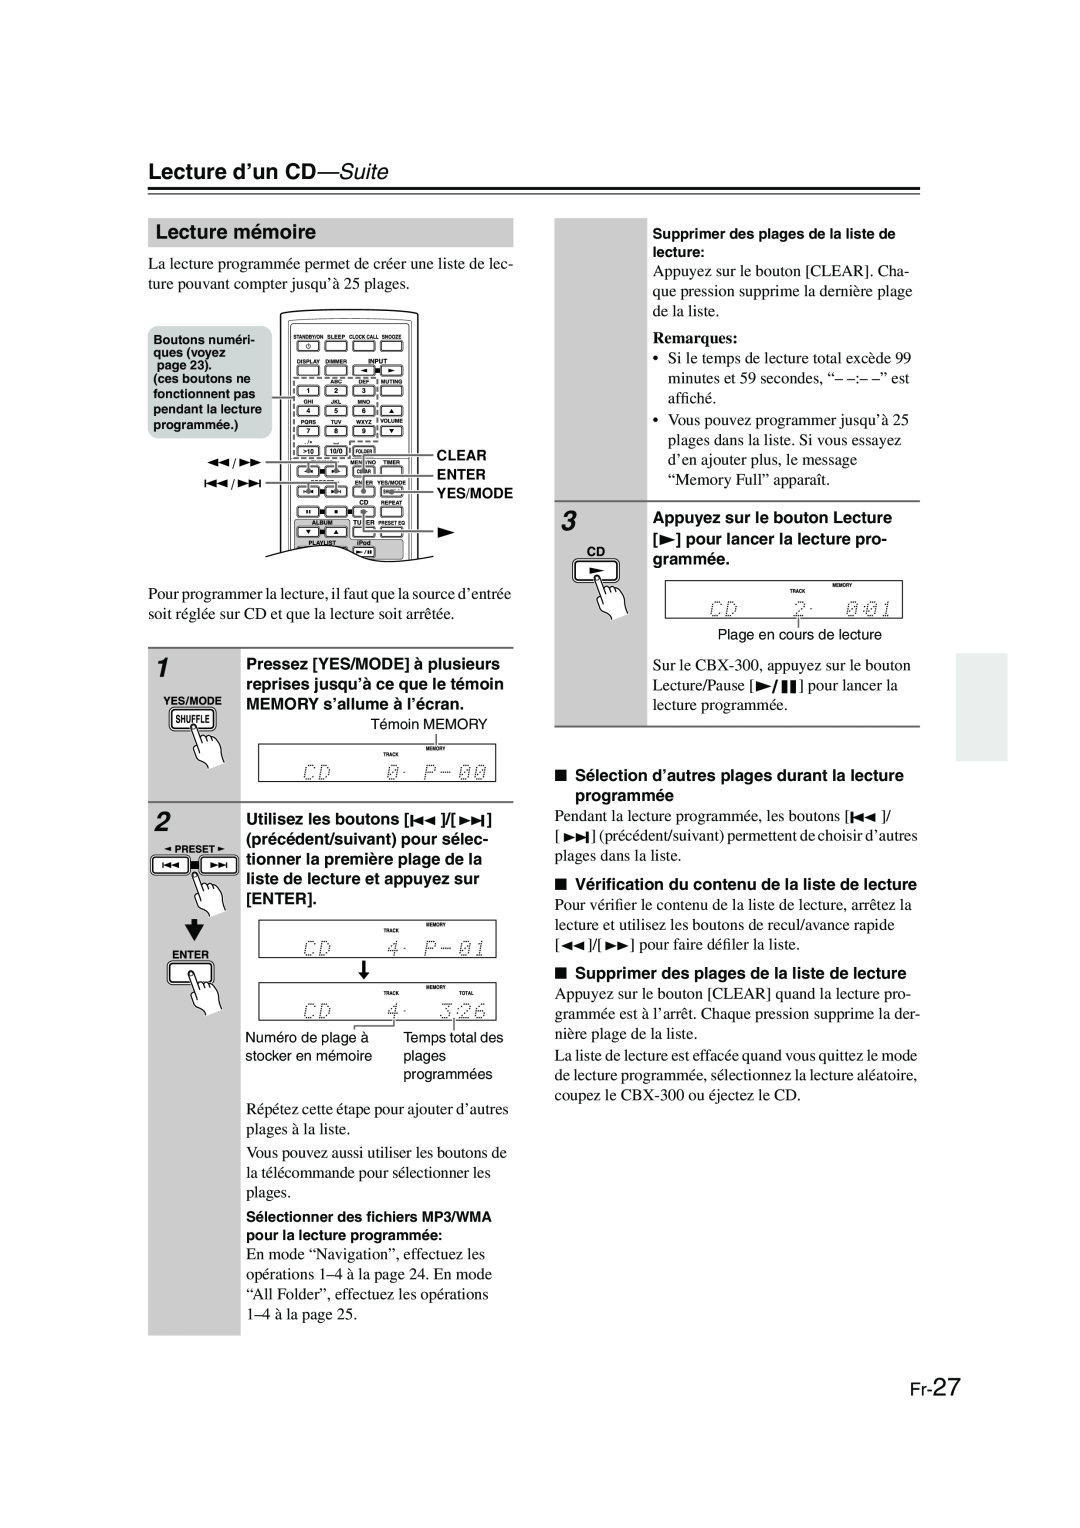 Onkyo CBX-300 instruction manual Lecture mémoire, Fr-27, Lecture d’un CD—Suite, Remarques 